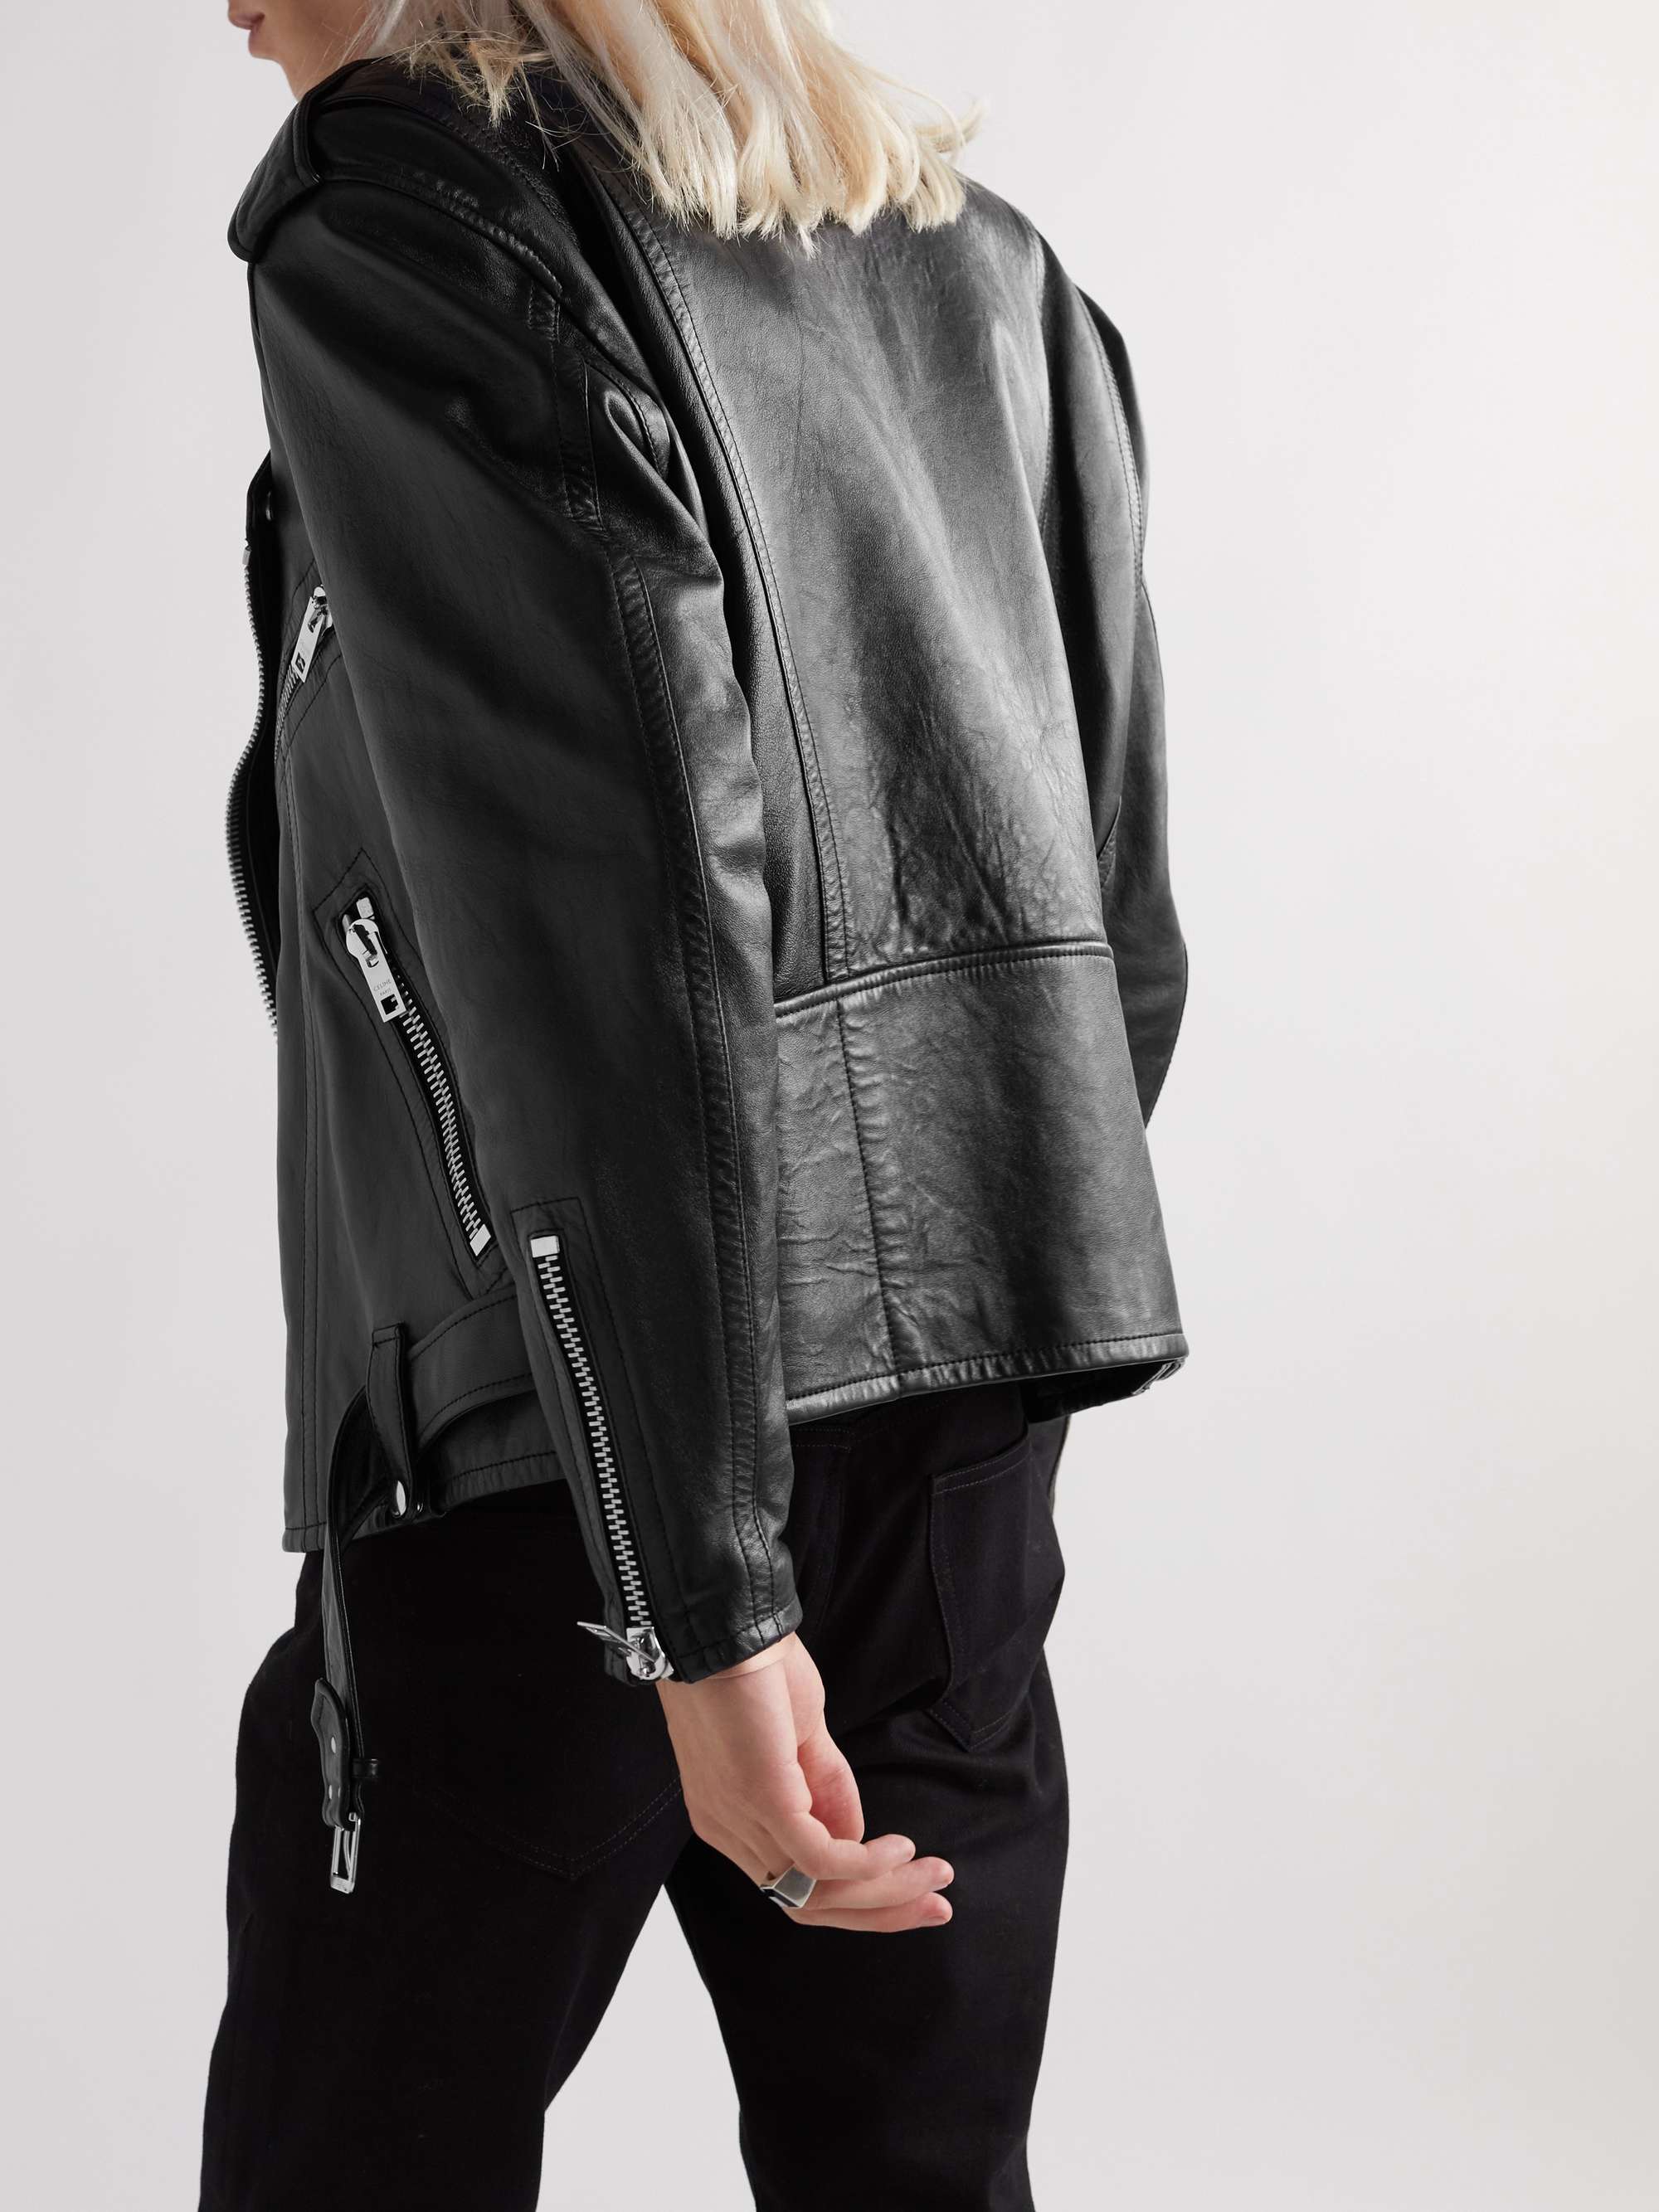 CELINE HOMME Textured-Leather Biker Jacket | MR PORTER